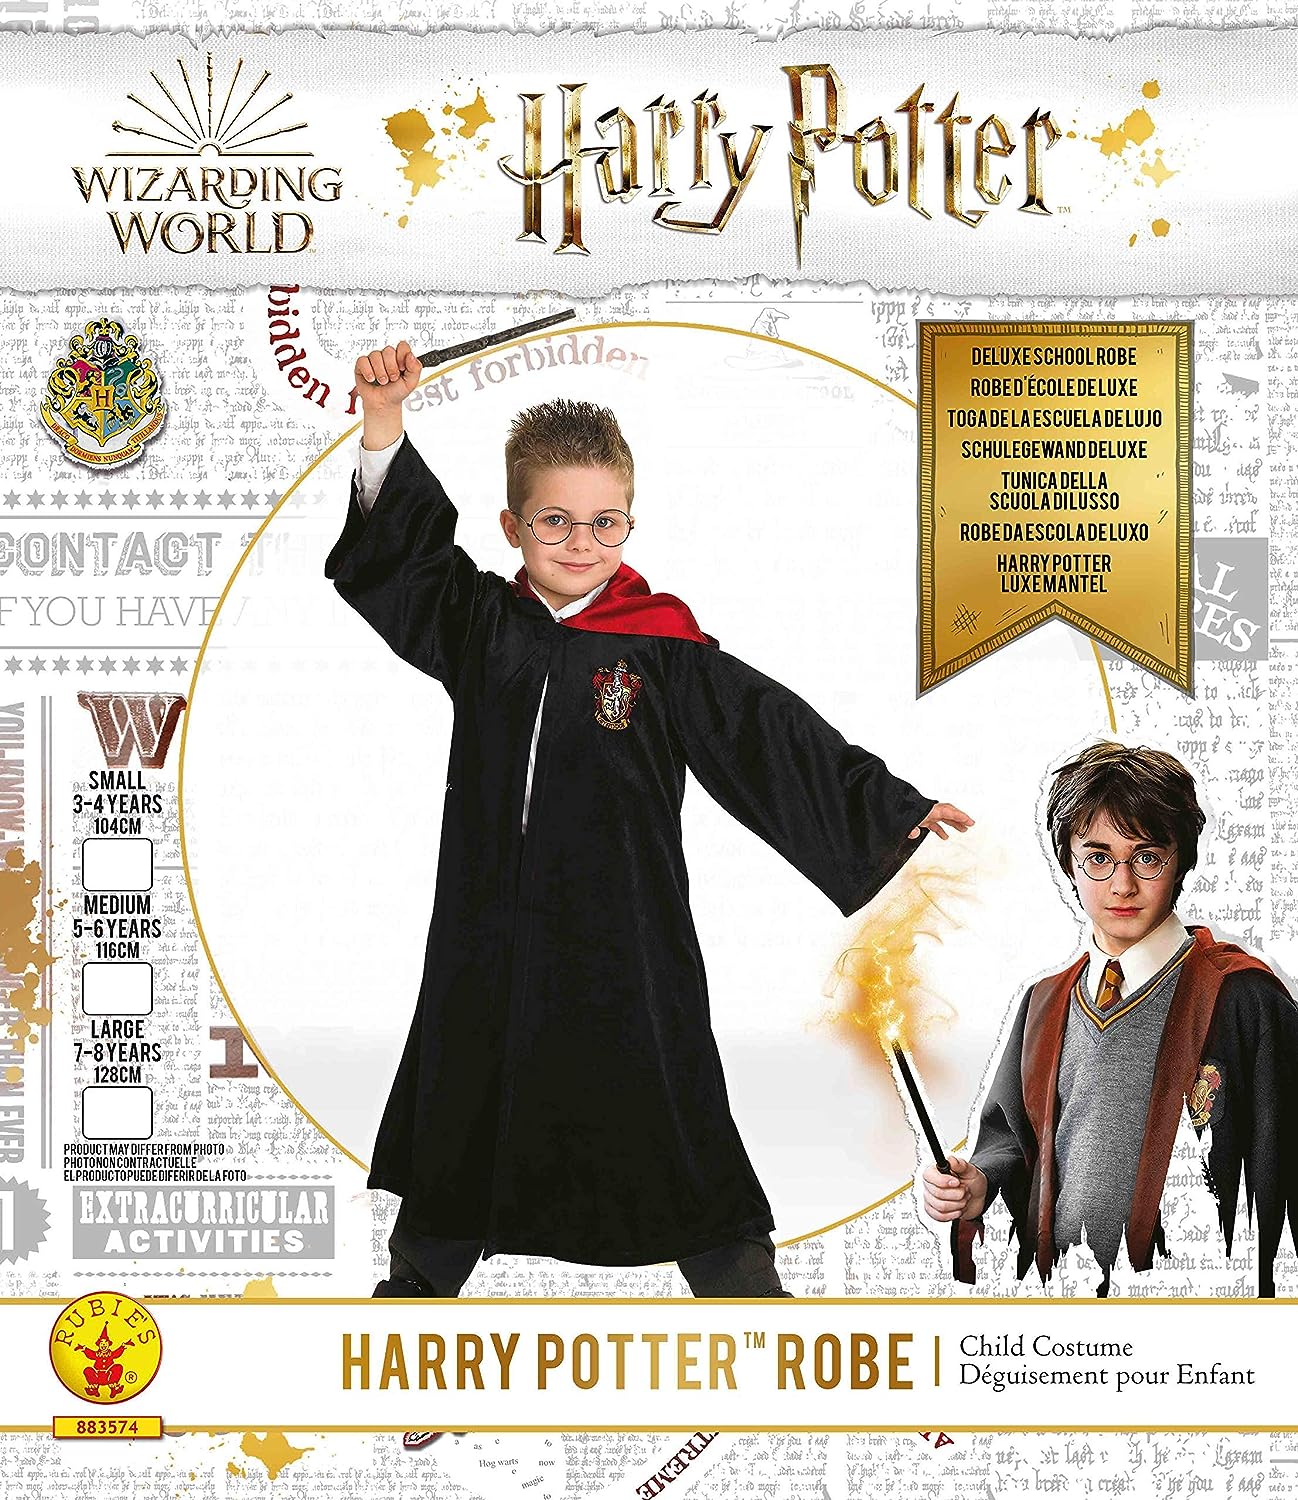 Rubies - Costume Harry Potter Deluxe, Costume per Bambini, Comprende Tunica  Nera con lo Stemma Grifondoro, il Cappuccio e la Spi